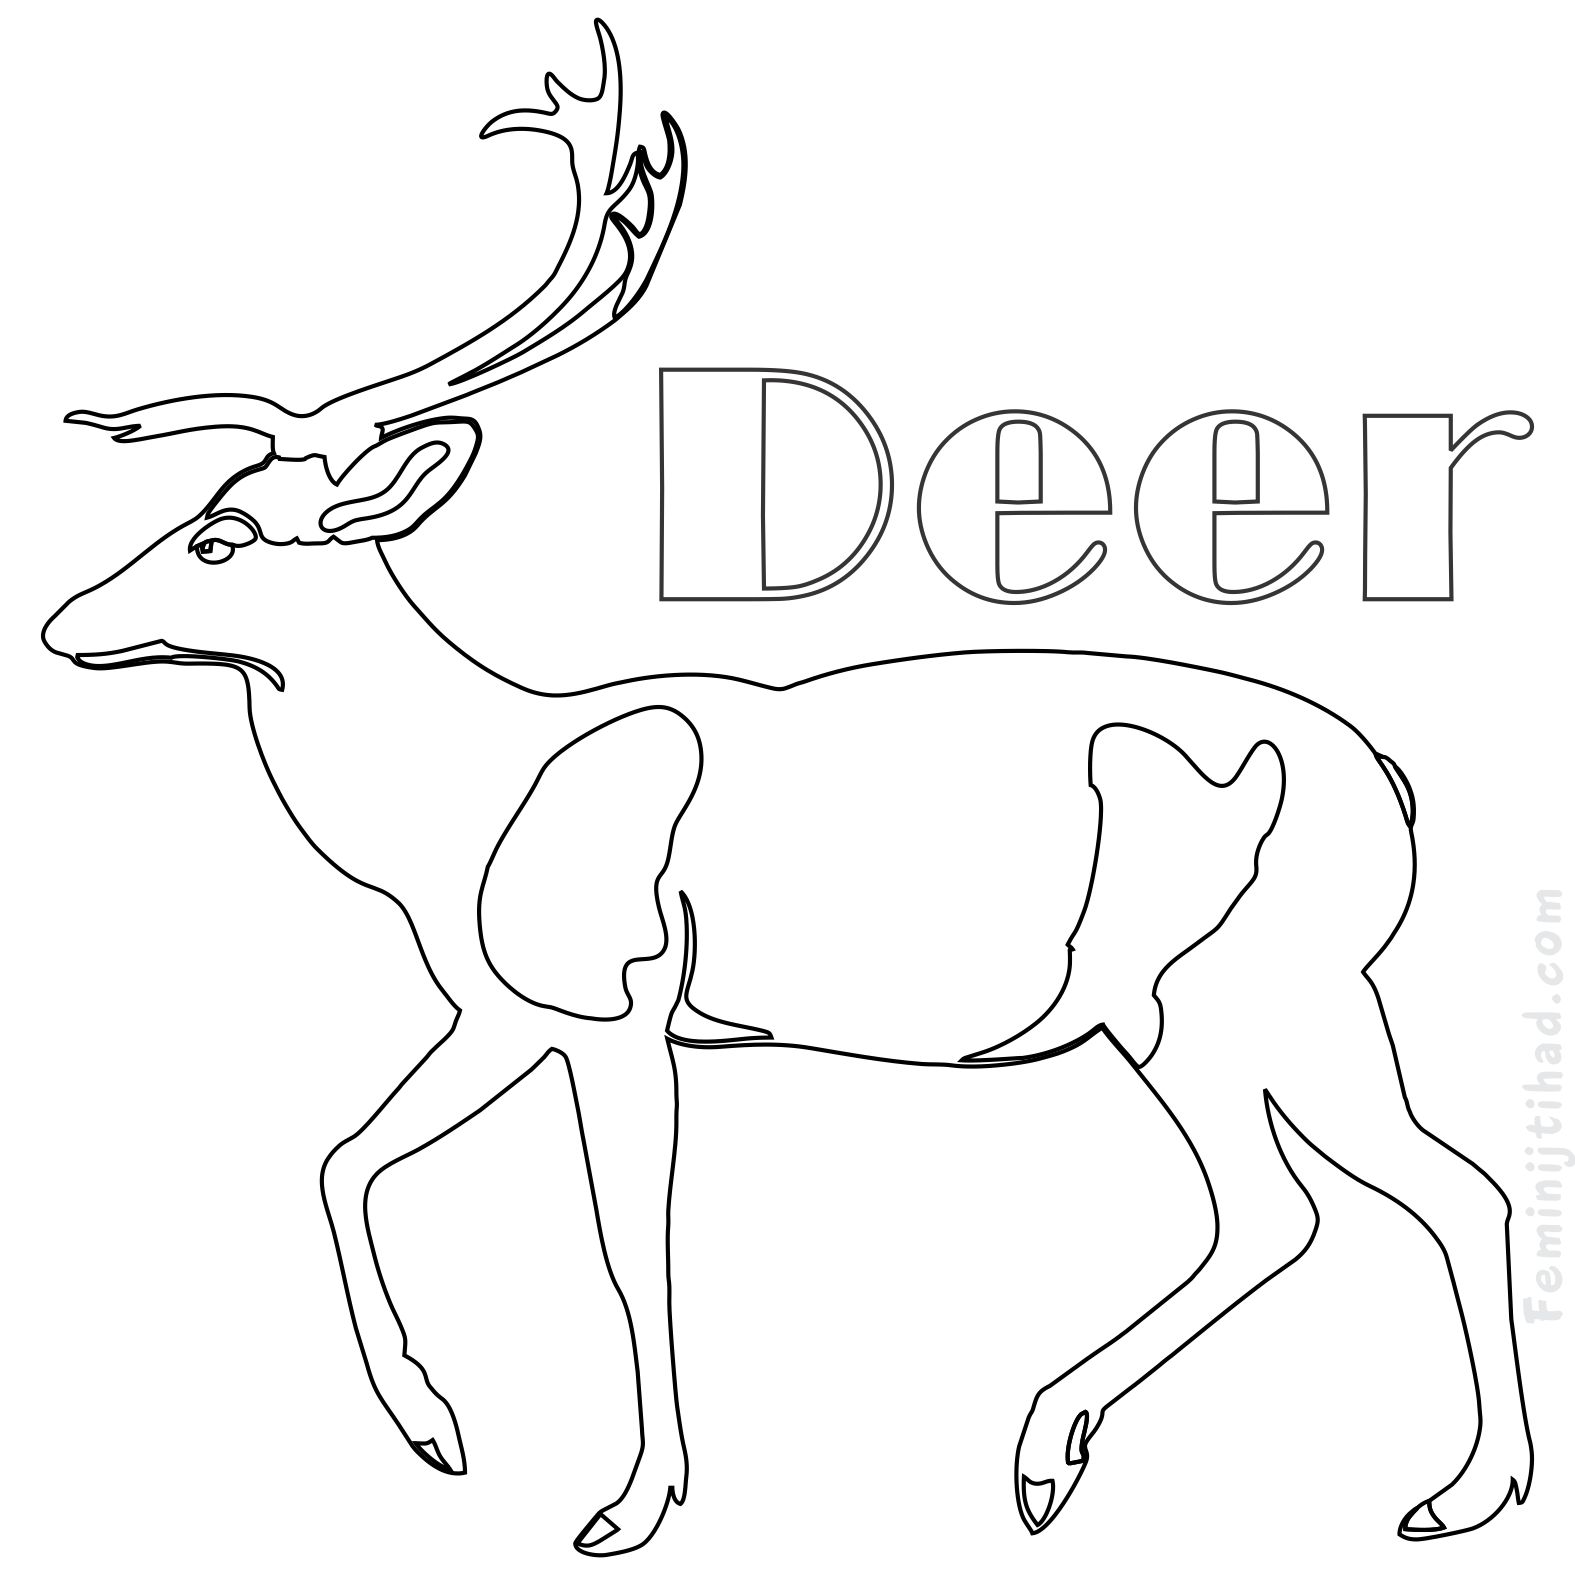 Deer Antler Coloring Pages at GetDrawings | Free download